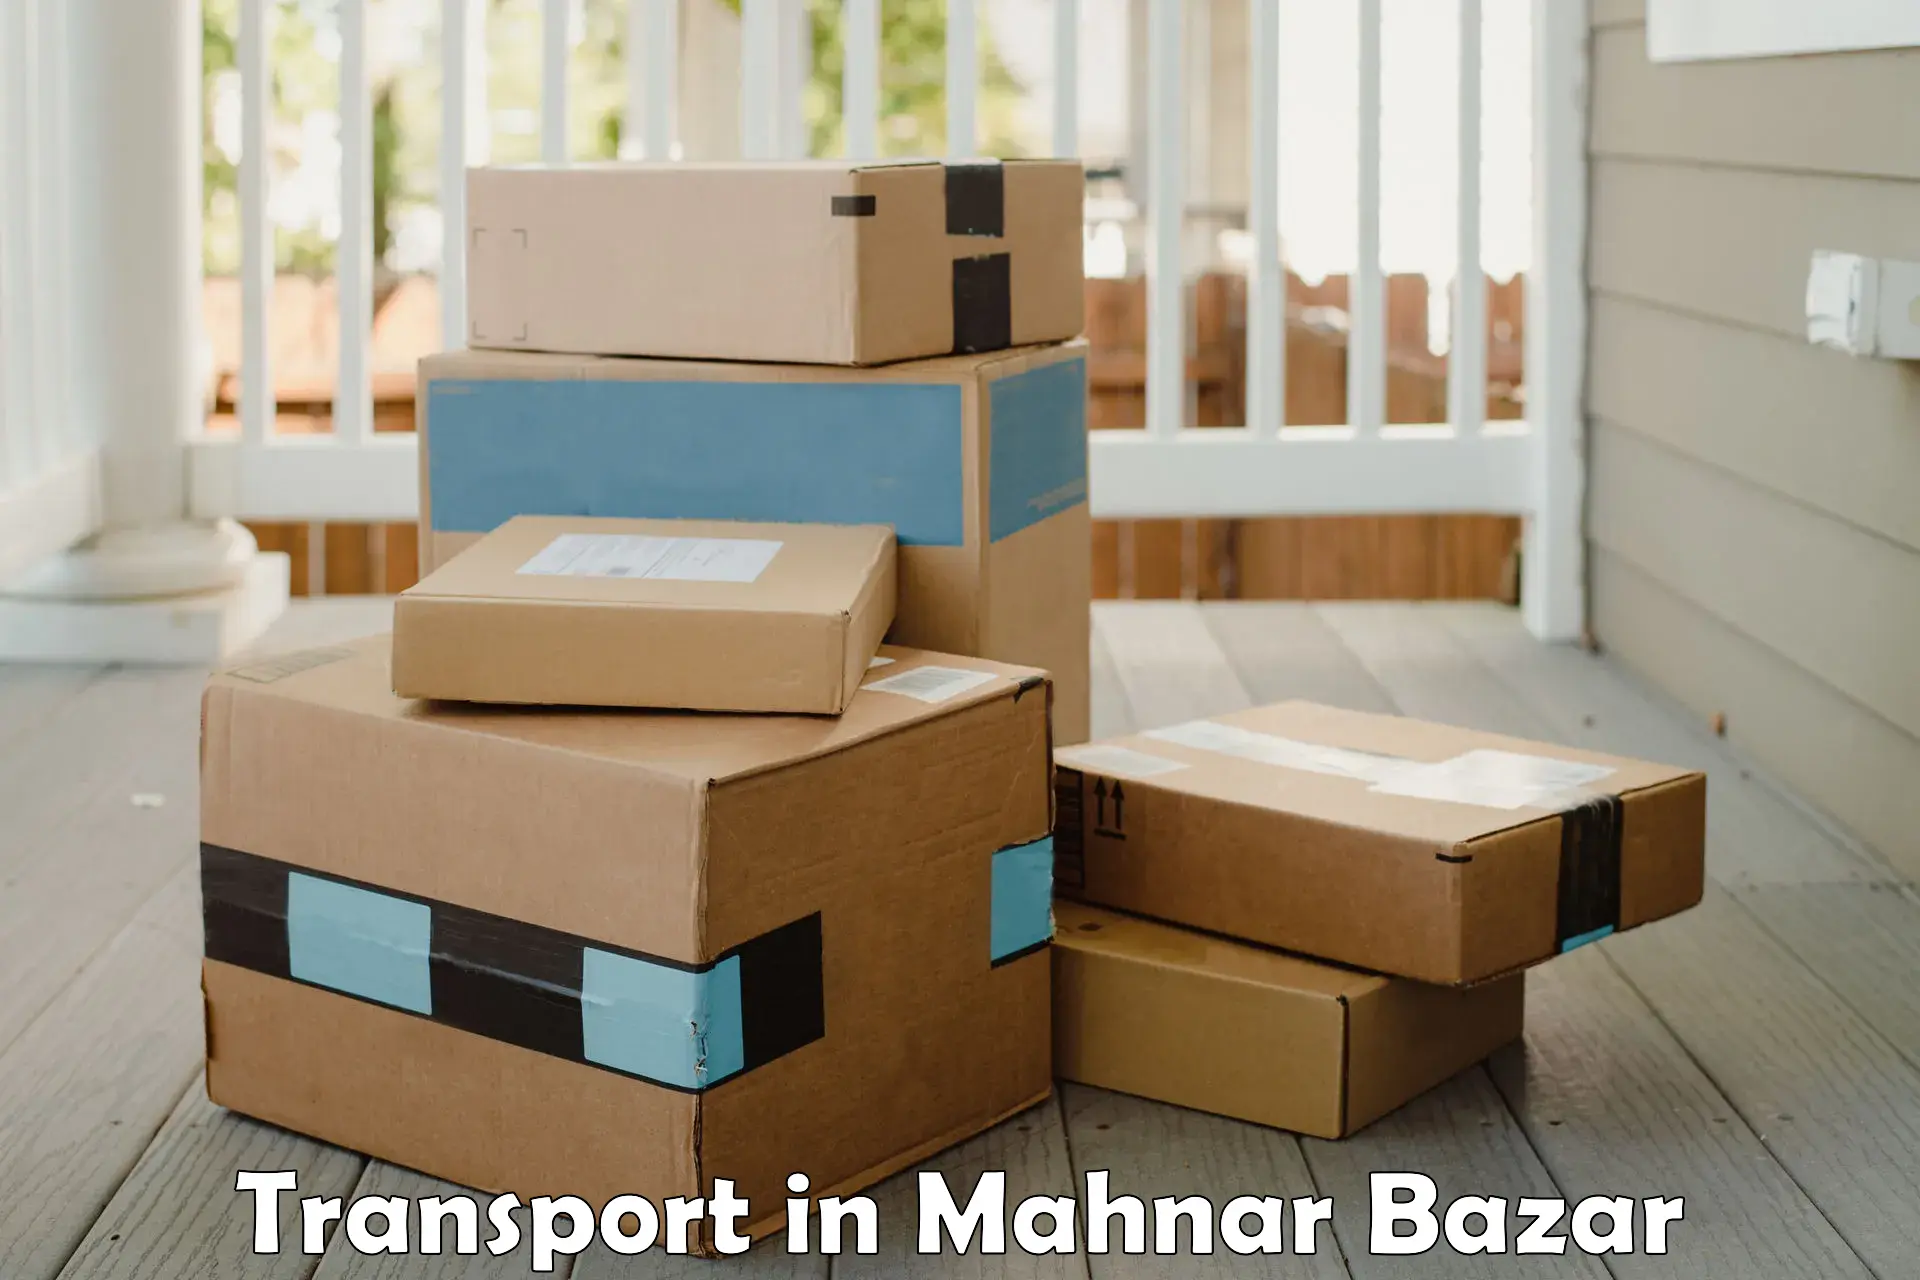 Cargo train transport services in Mahnar Bazar